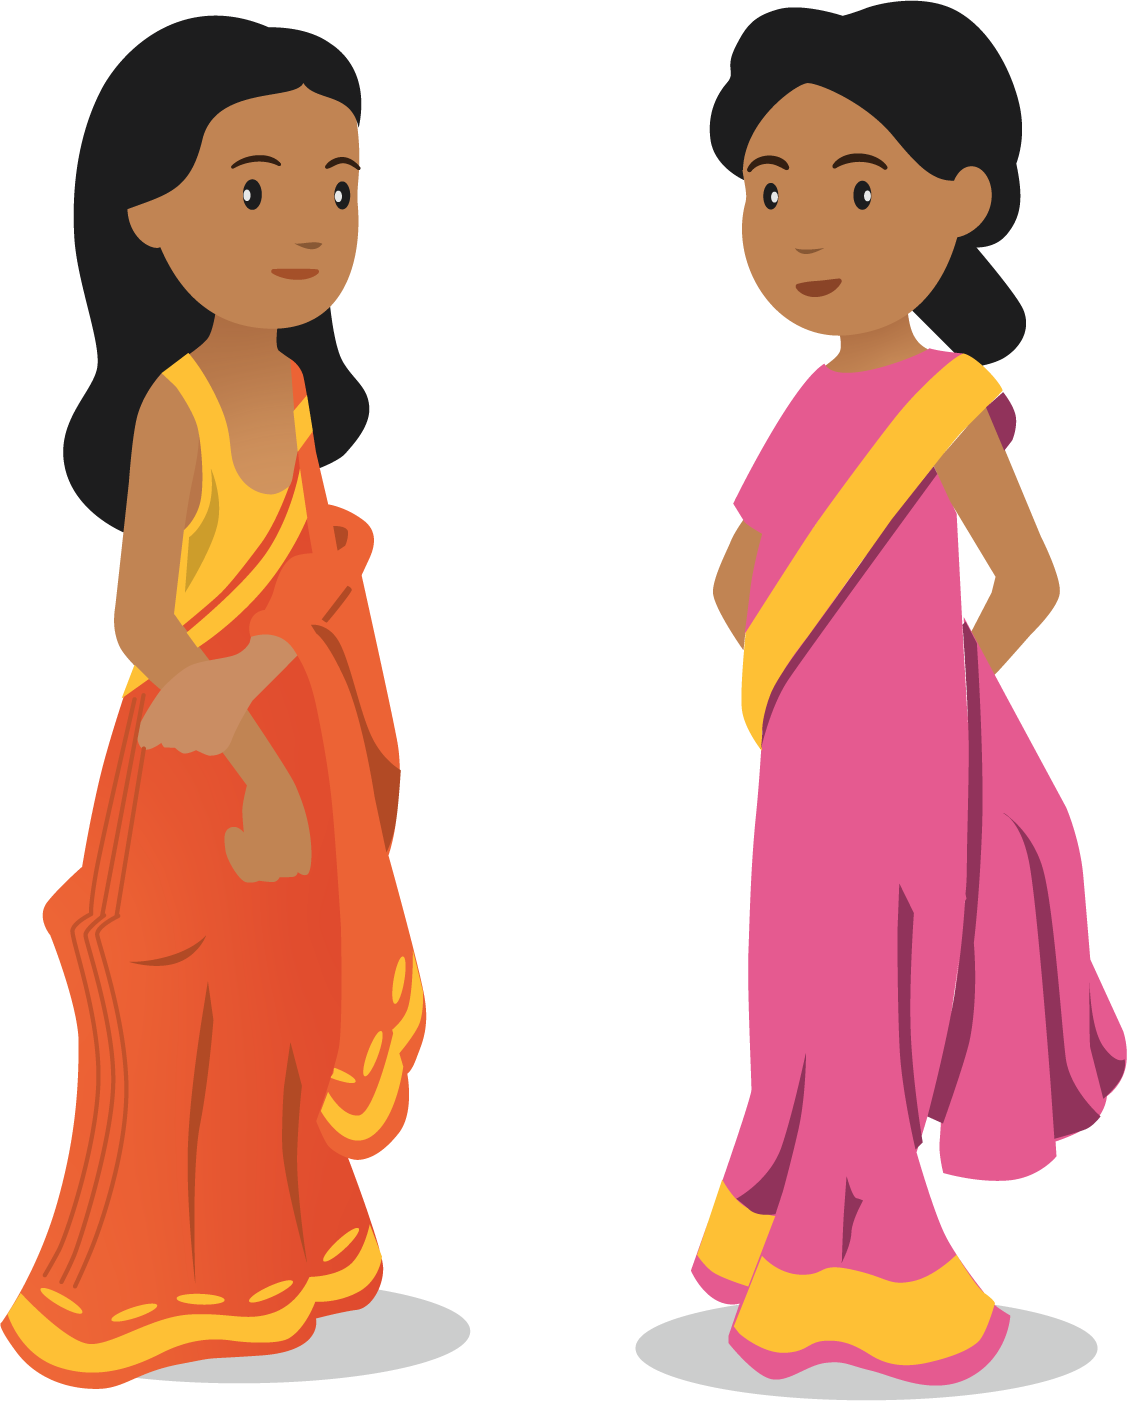 Girls in saris dresses.